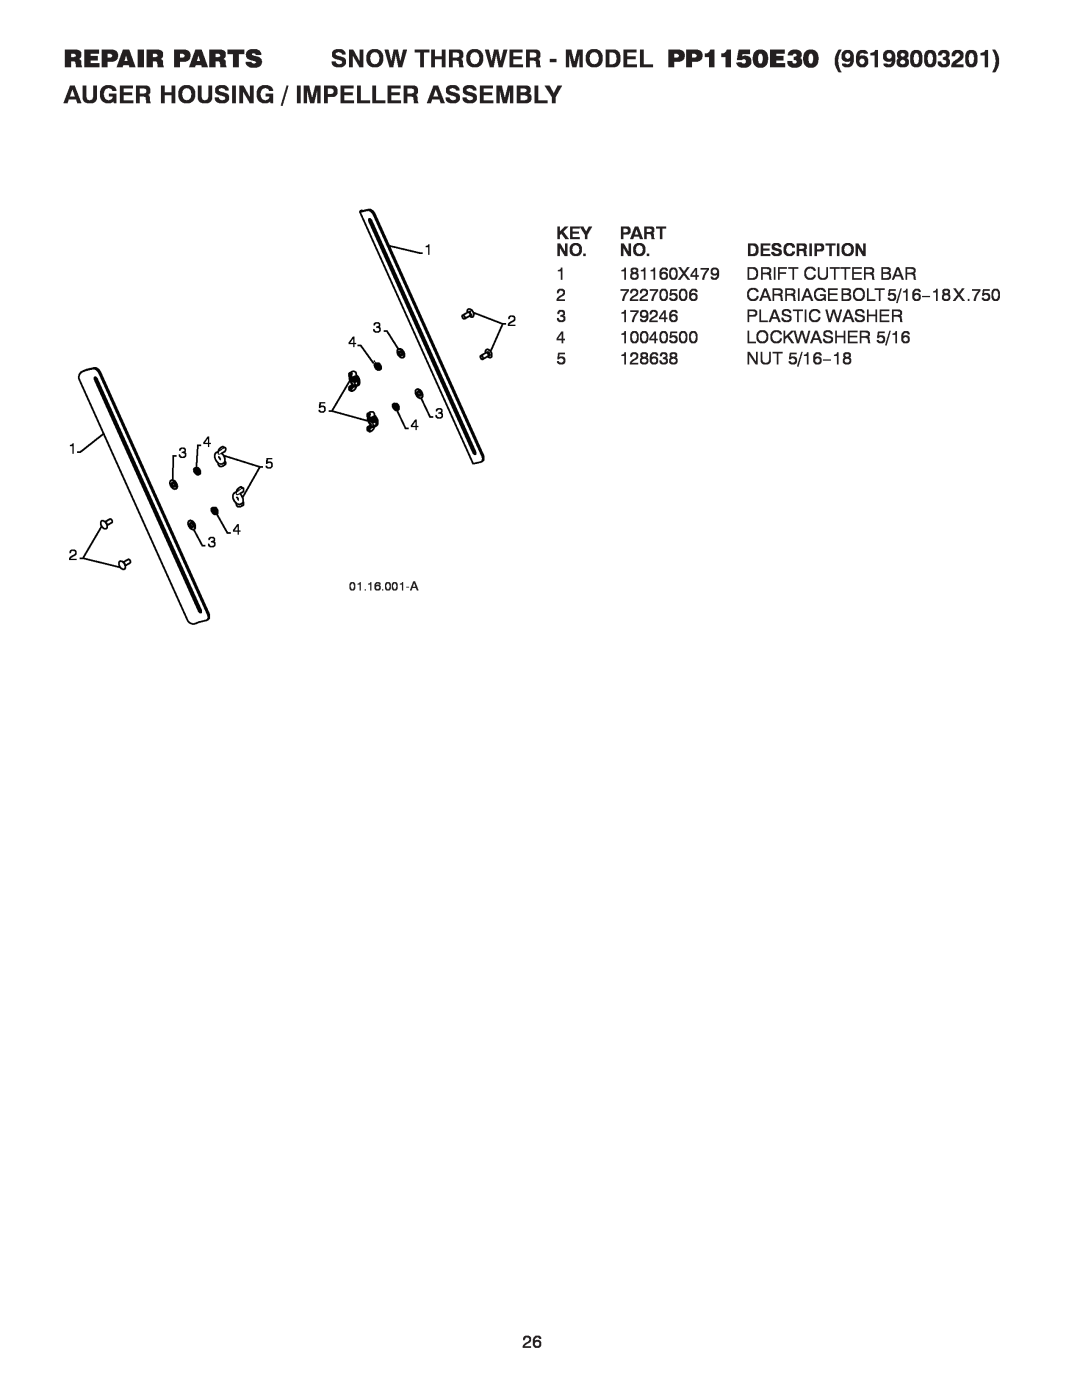 Poulan REPAIR PARTS SNOW THROWER - MODEL PP1150E30, Auger Housing / Impeller Assembly, Part, Description, 181160X479 